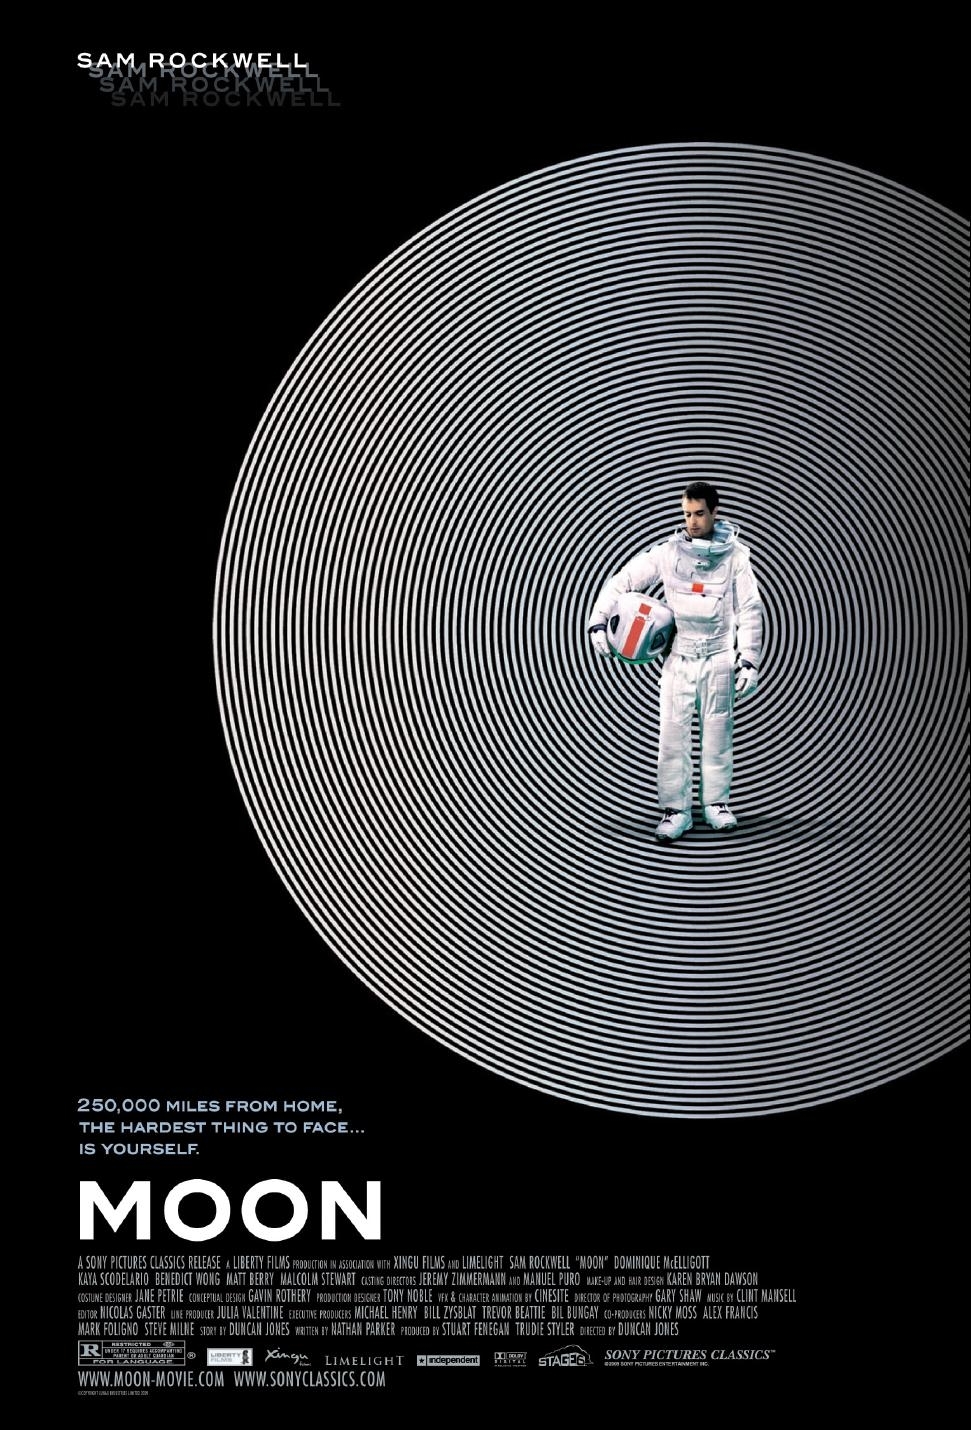 Moon (2009) ★★★★☆